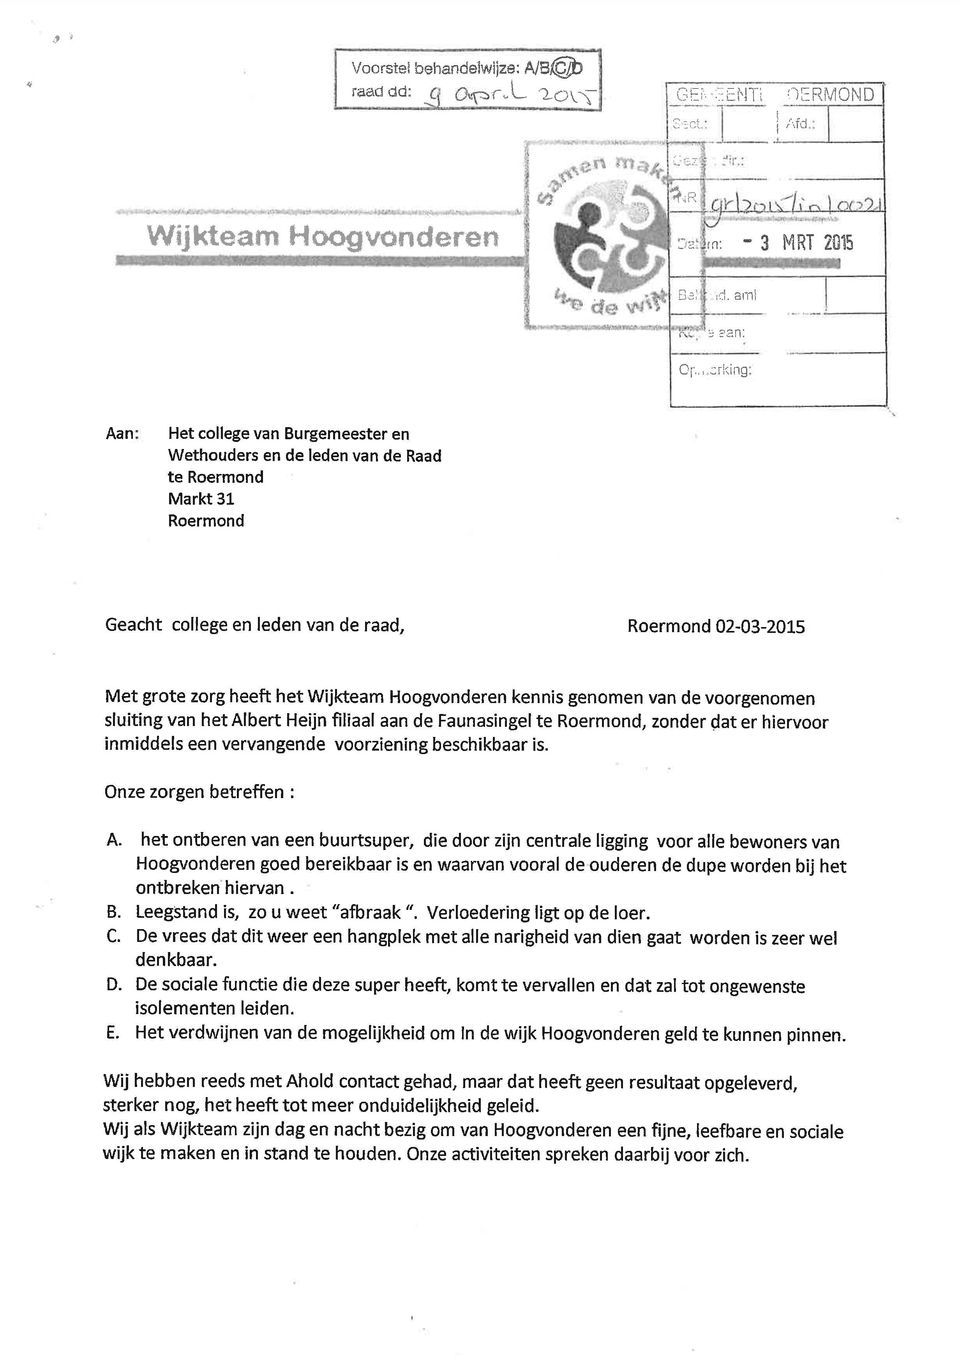 Wijkteam Hoogvonderen kennis genomen van de voorgenomen sluiting van het Albert Heijn filiaal aan de Faunasingel te Roermond, zonder dat er hiervoor inmiddels een vervangende voorziening beschikbaar